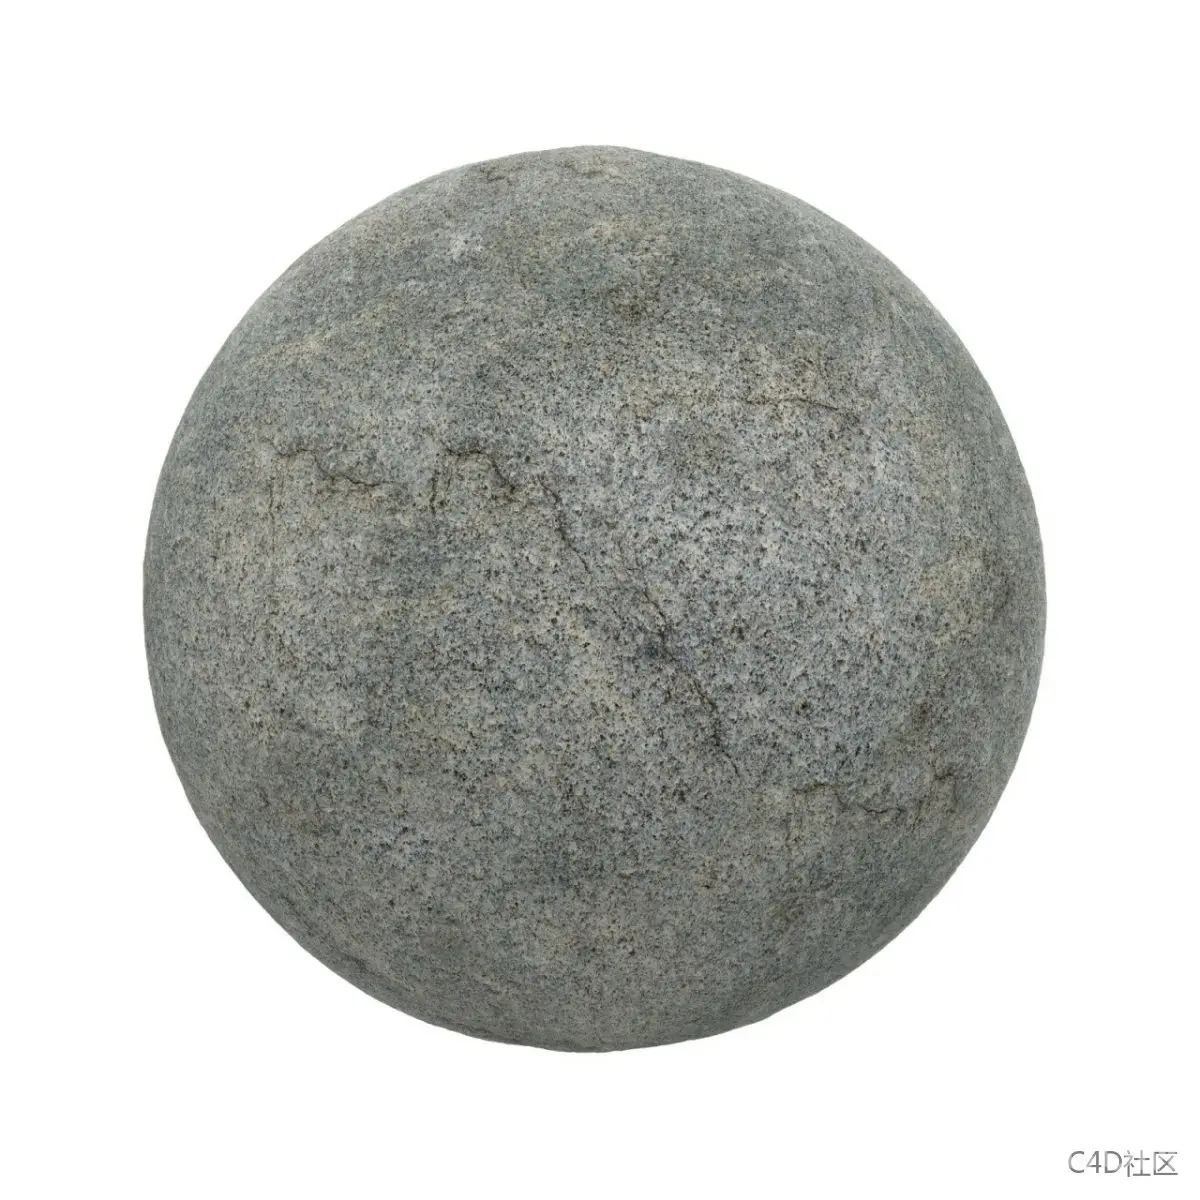 1637382068 Rough Grey Stone 1 Stone 26